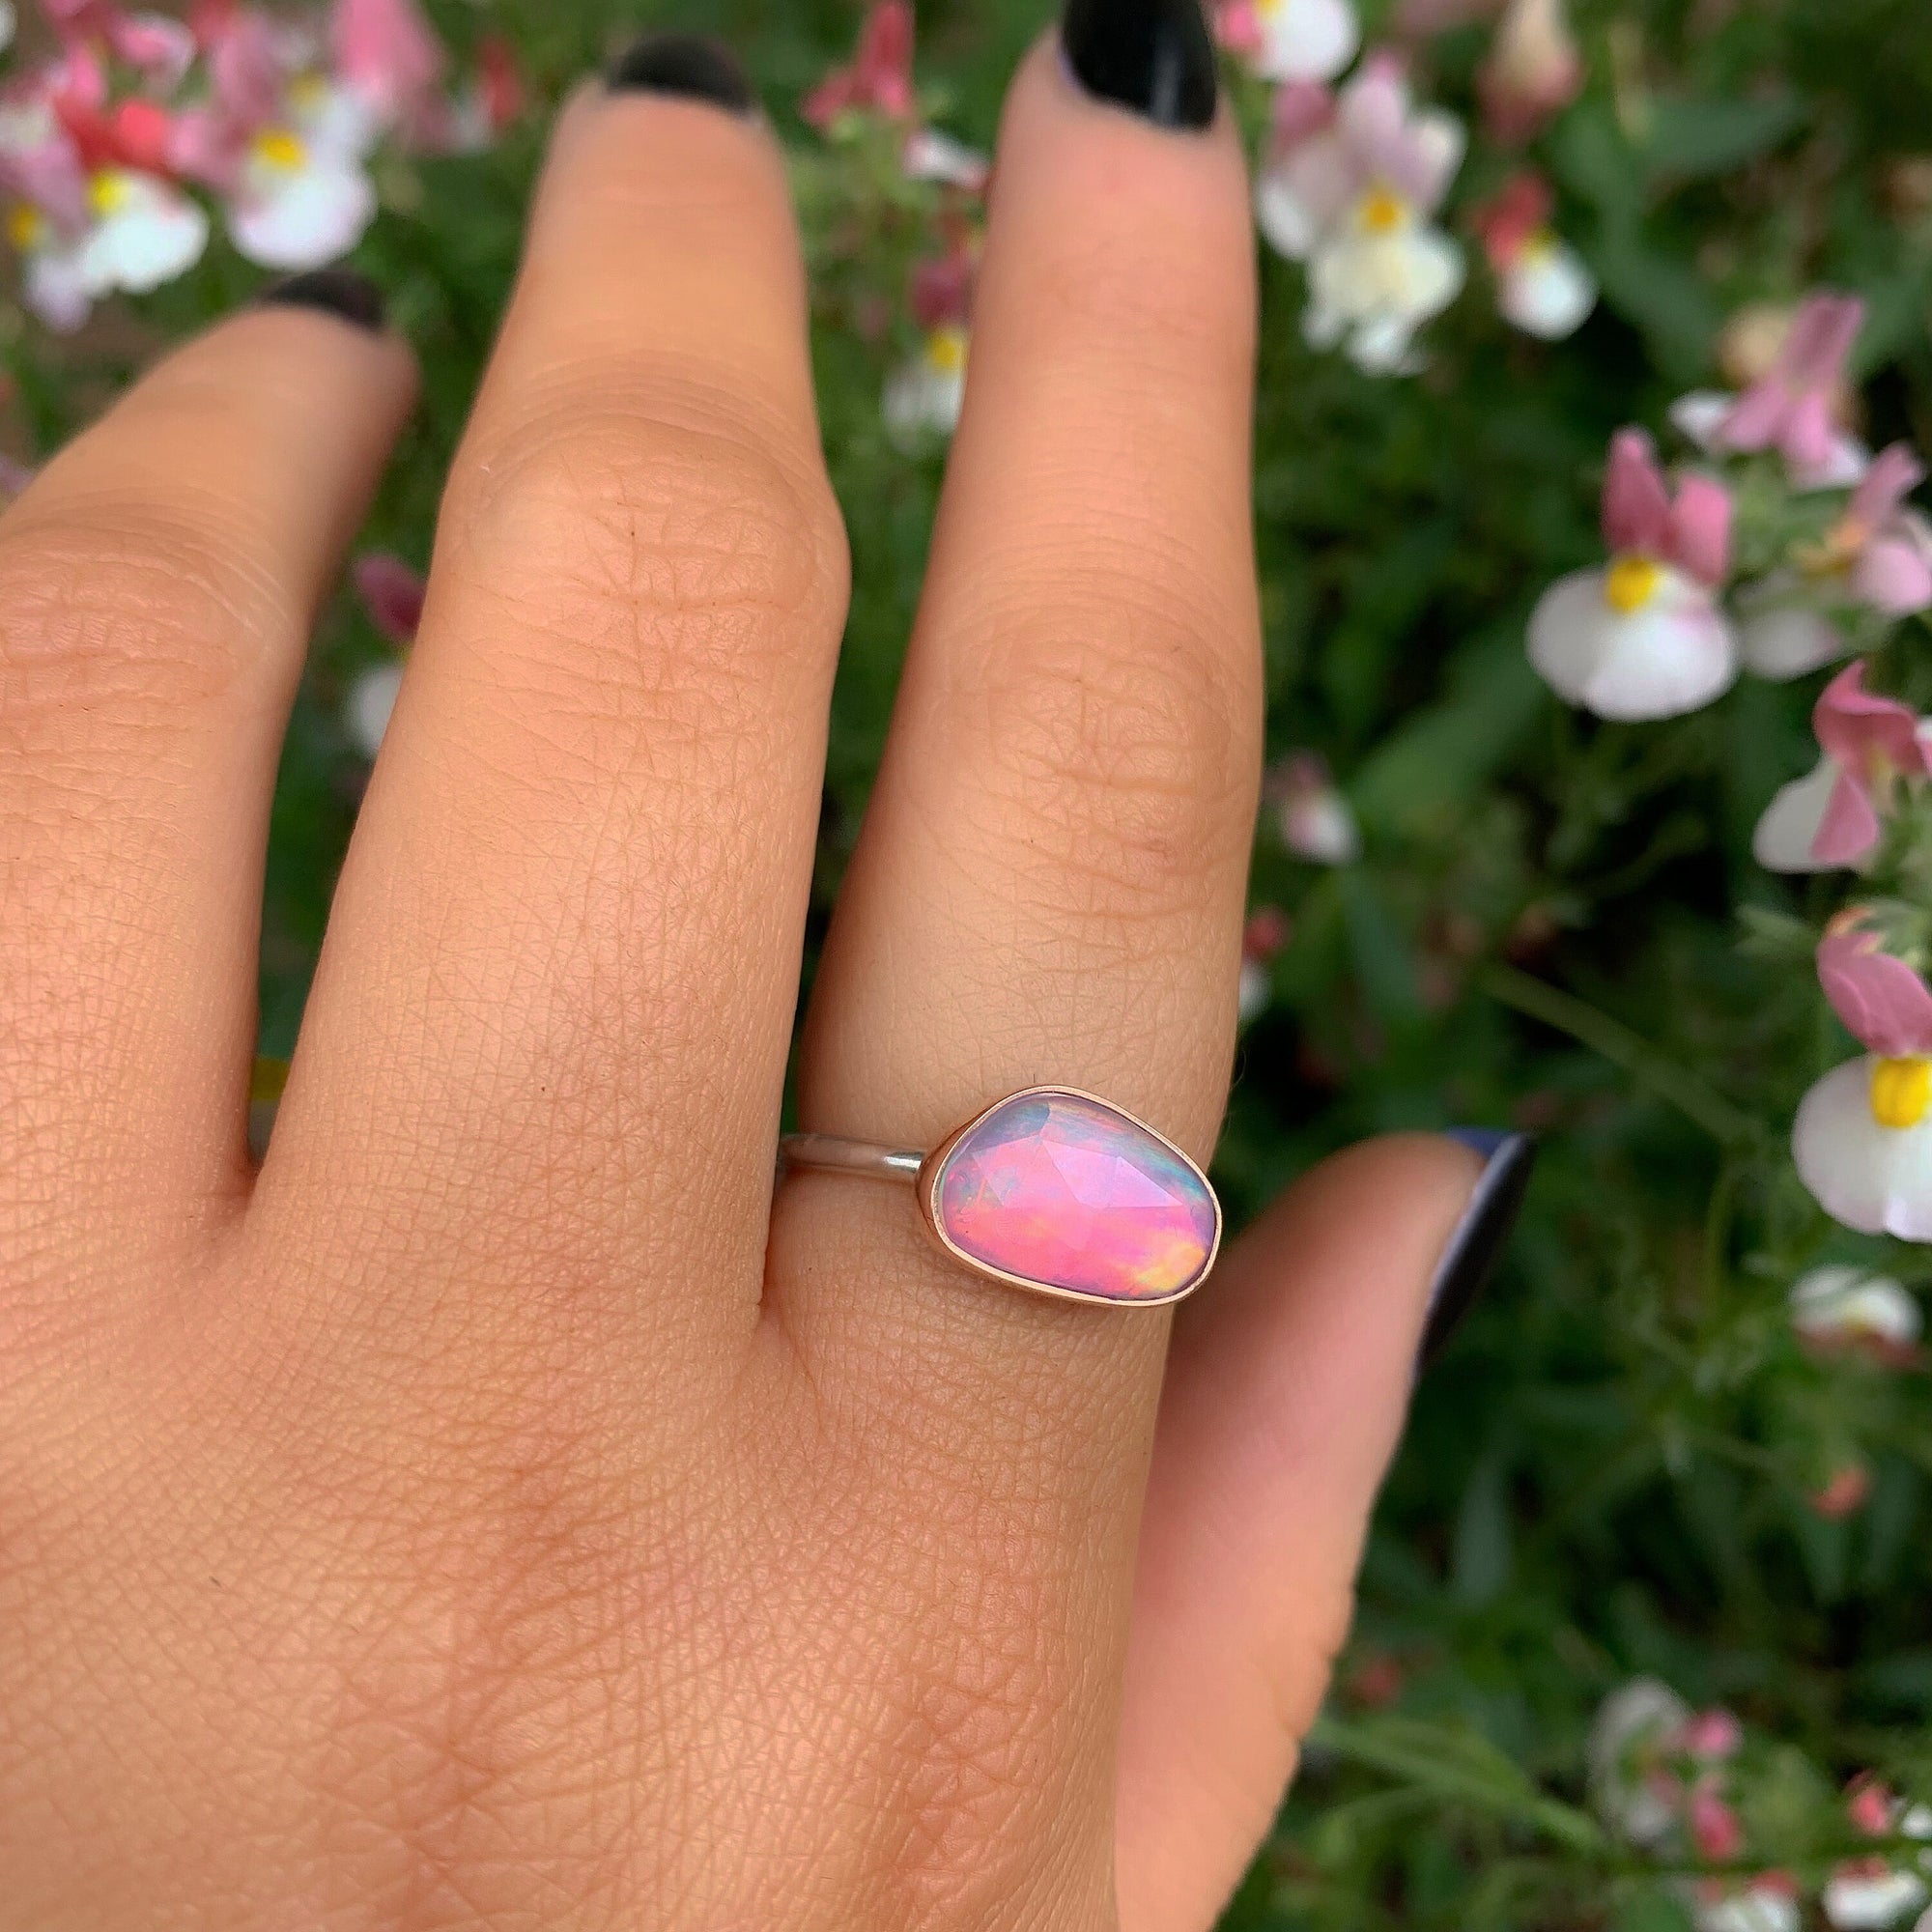 Rose Cut Clear Quartz & Aurora Opal Ring - Size 7 1/2 